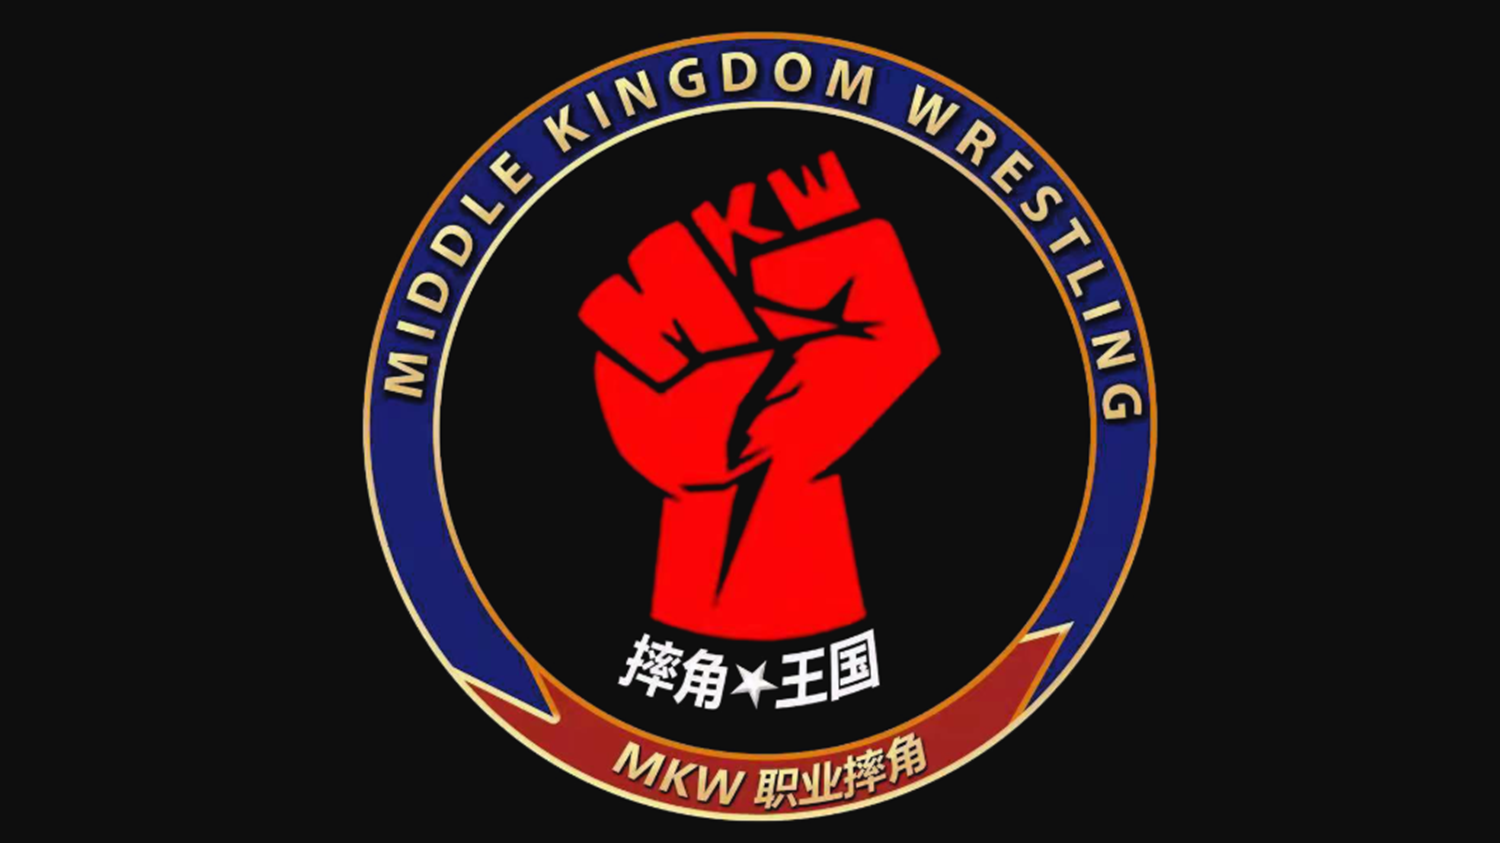 Middle Kingdom Wrestling